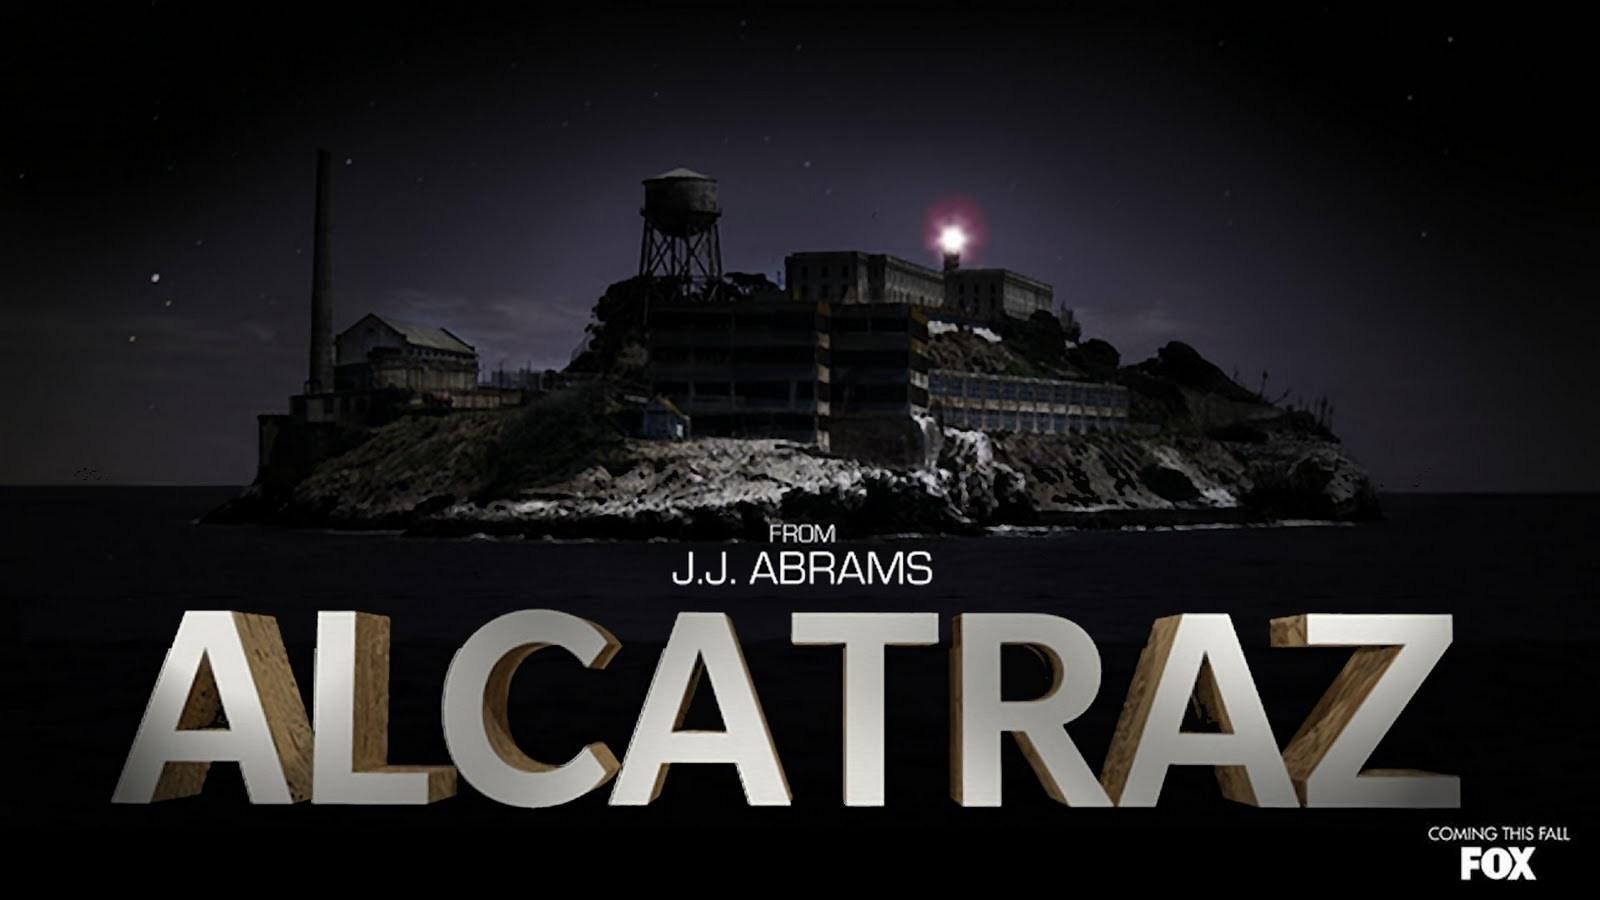 Alcatraz (TV Show) image Alcatraz Wallpaper HD wallpaper